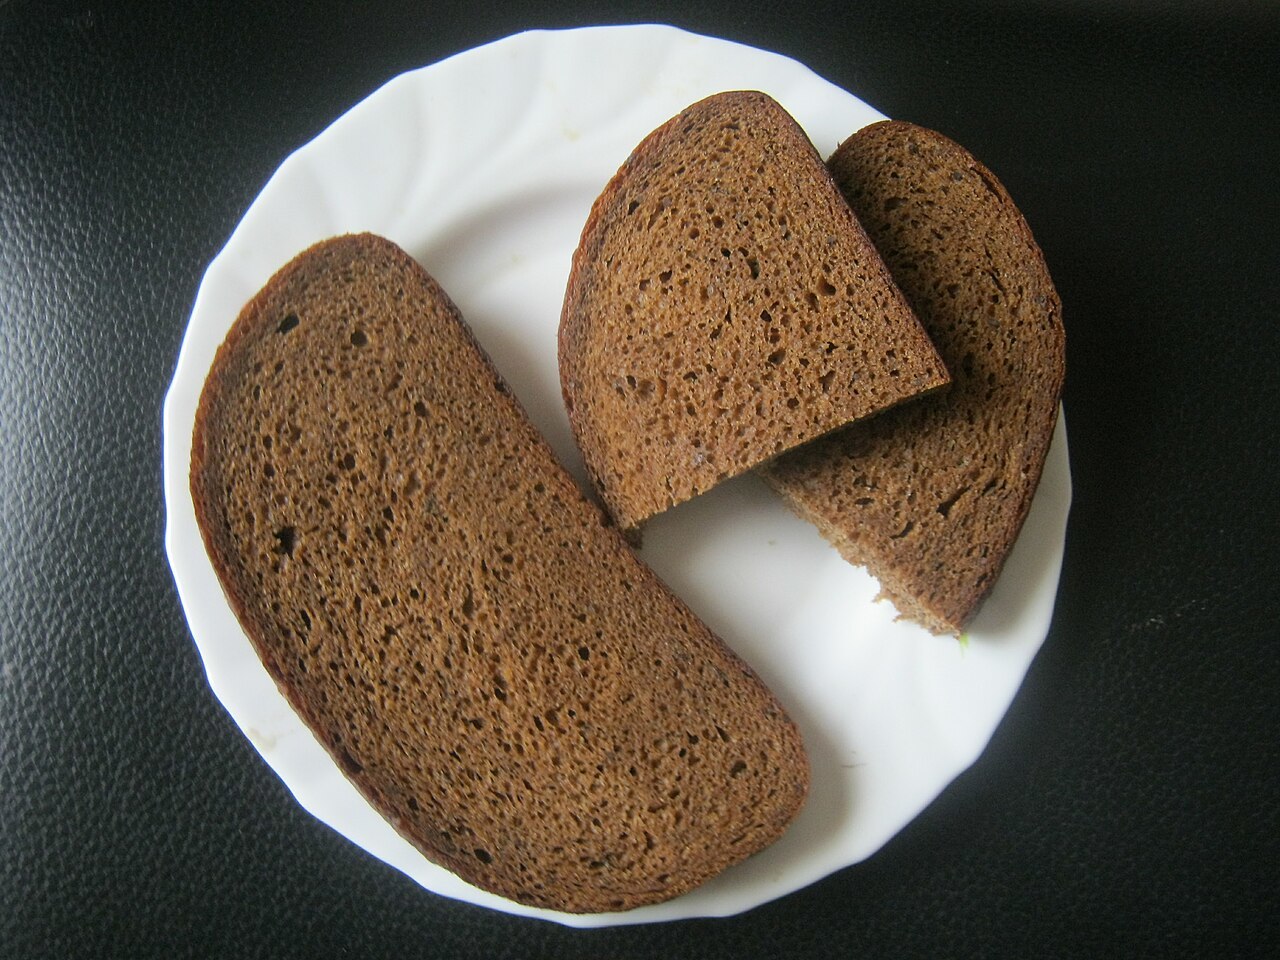 Врач Гадзиян подчеркнул, что ржаной хлеб представляет собой более безопасную альтернативу для здоровья